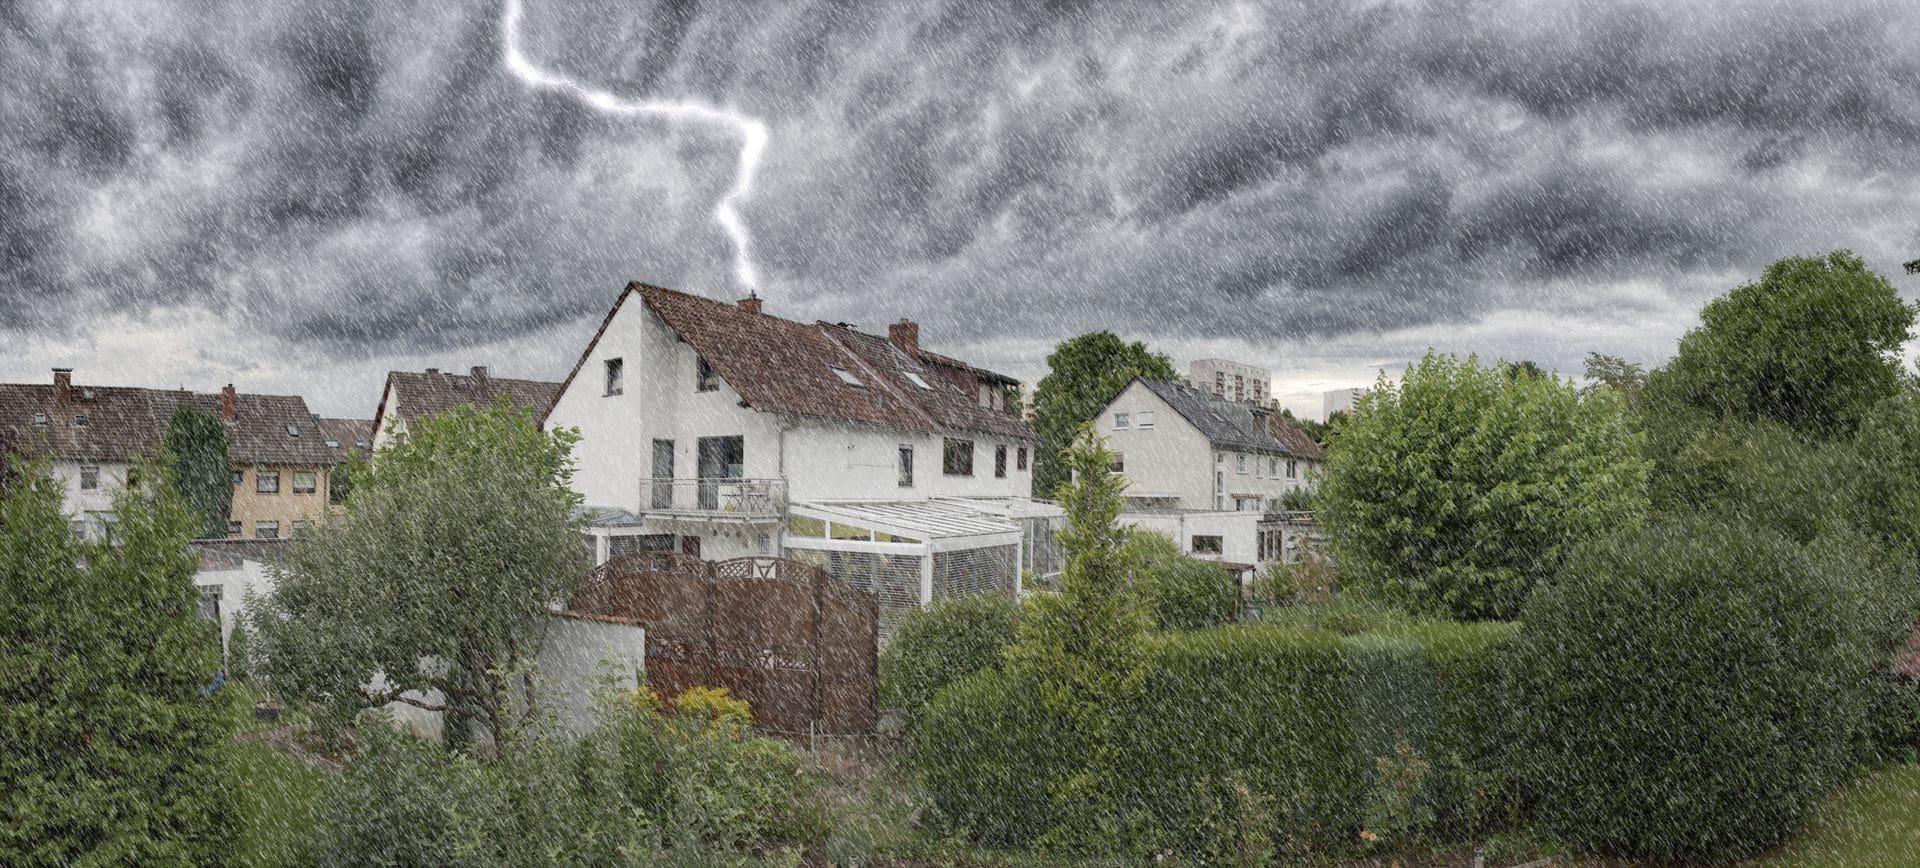 Blitzschlag: Haus von Gewitter betroffen - Welche Versicherung wird für die Schäden aufkommen? (© Frank Wagner / stock.adobe.com)